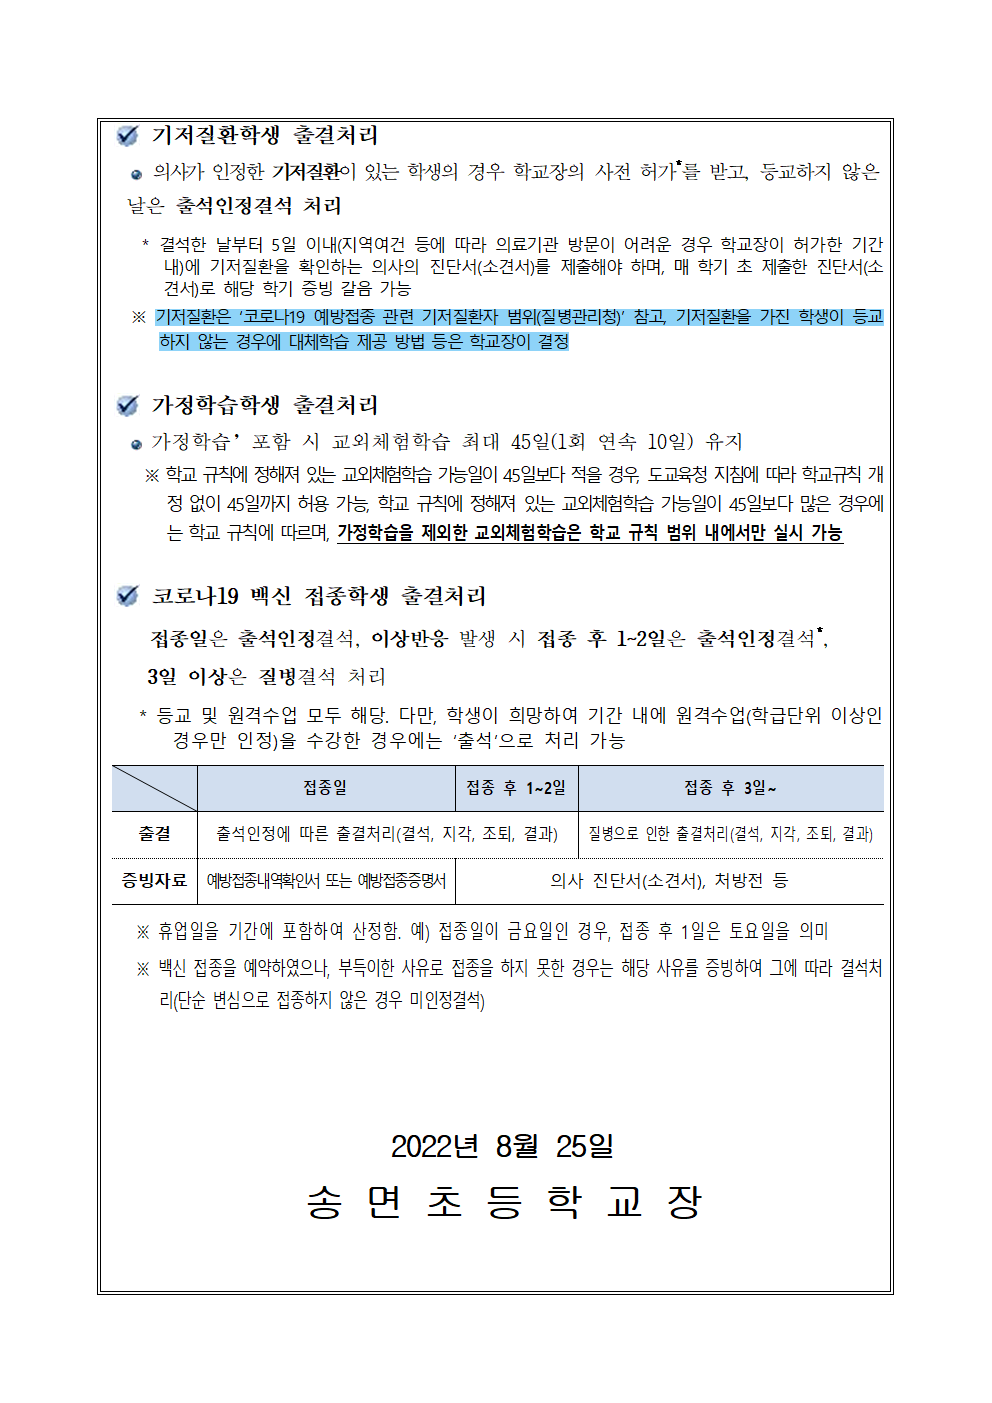 코로나19 대응을 위한 2학기 출결 안내 가정통신문(1)002